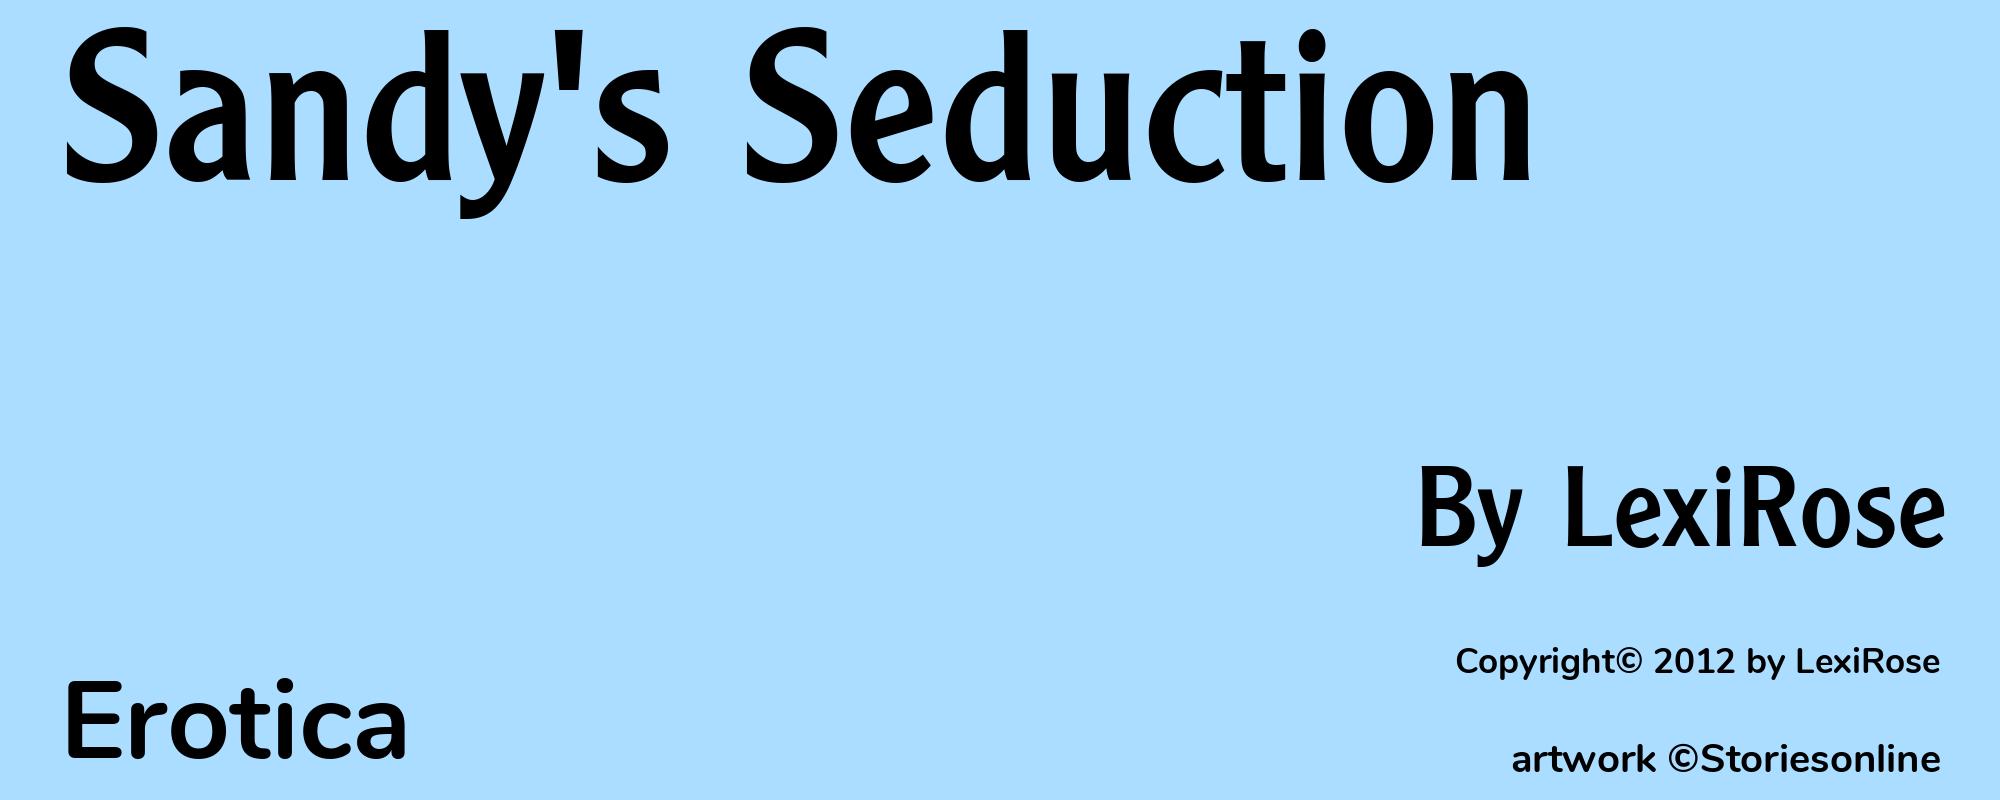 Sandy's Seduction - Cover